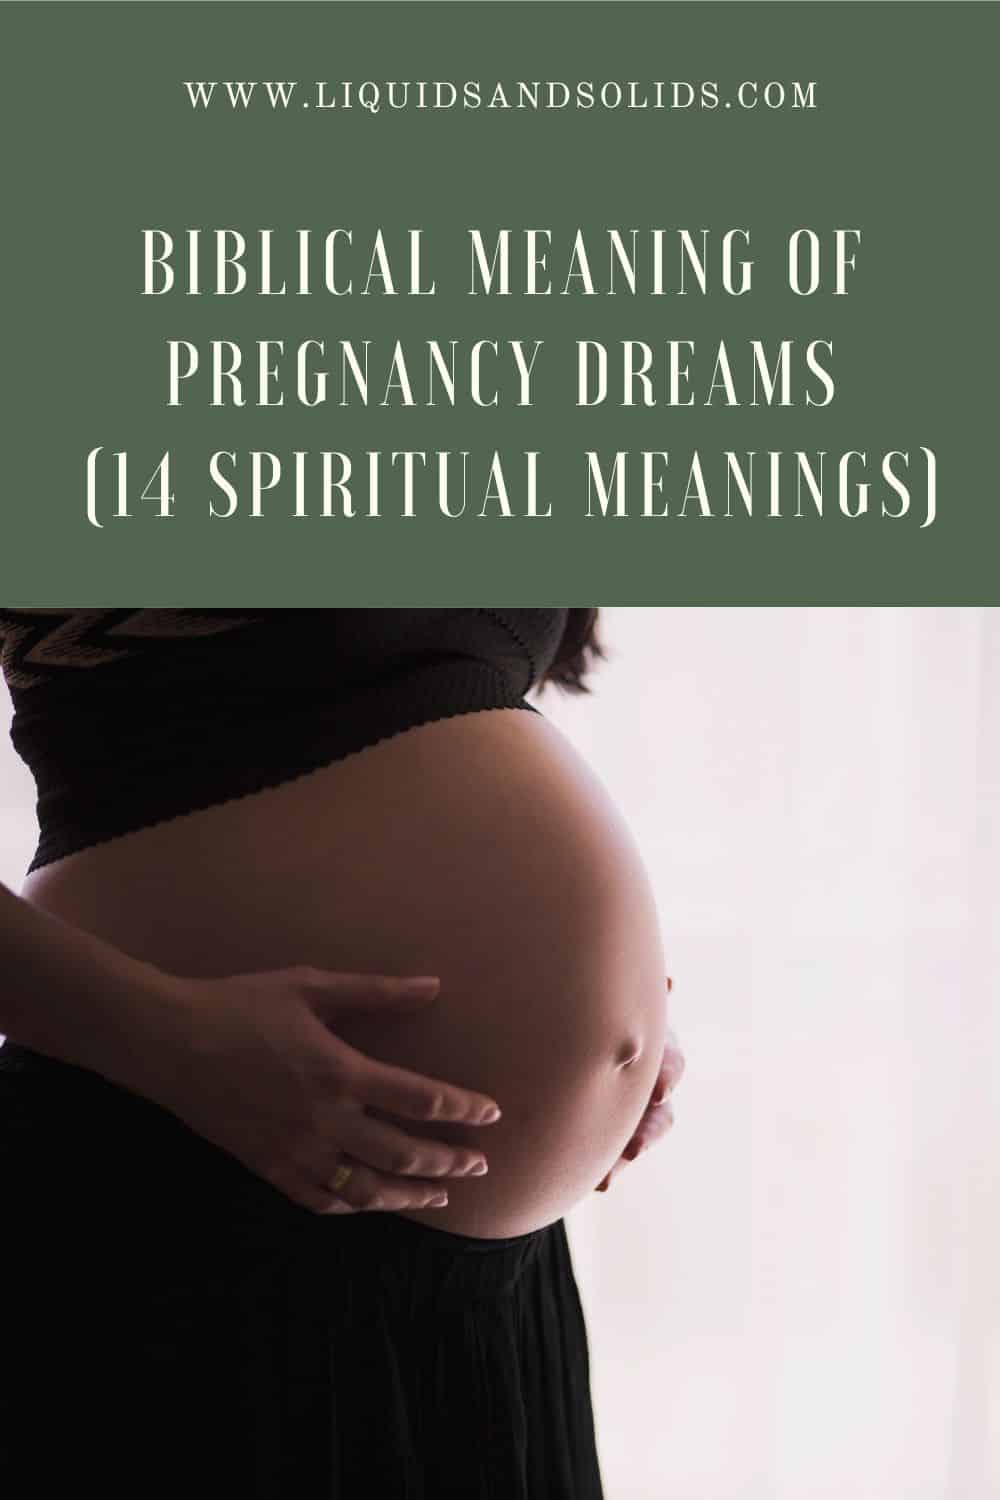  Signification biblique des rêves de grossesse (14 significations spirituelles)